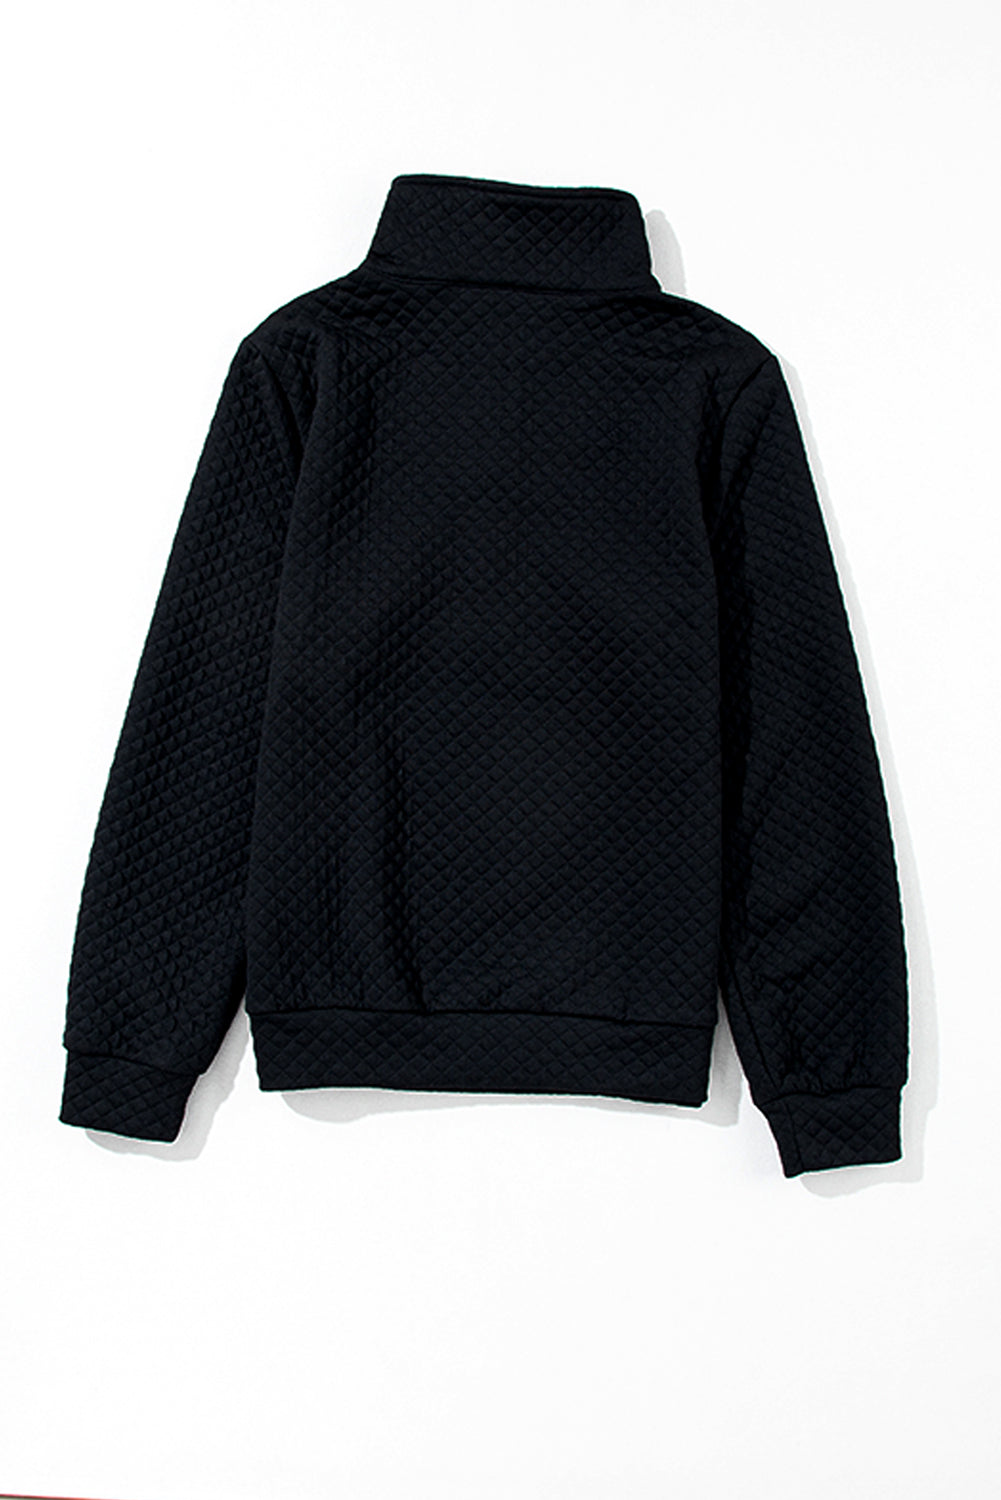 Black Solid Half Zipper Quilted Pullover Sweatshirt-6